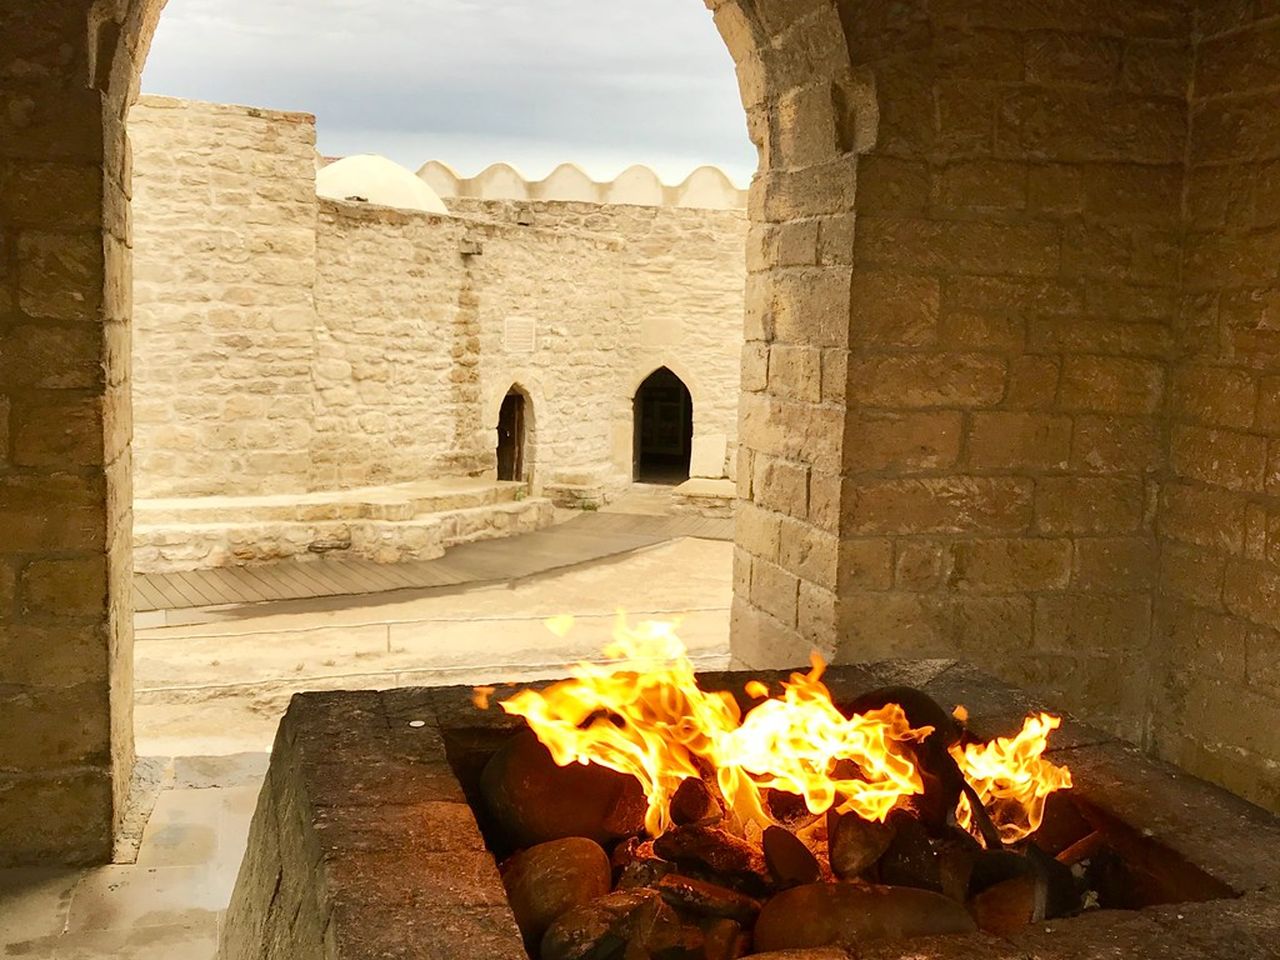 К храму огнепоклонников и Горящей горе из Баку | Цена 190€, отзывы, описание экскурсии